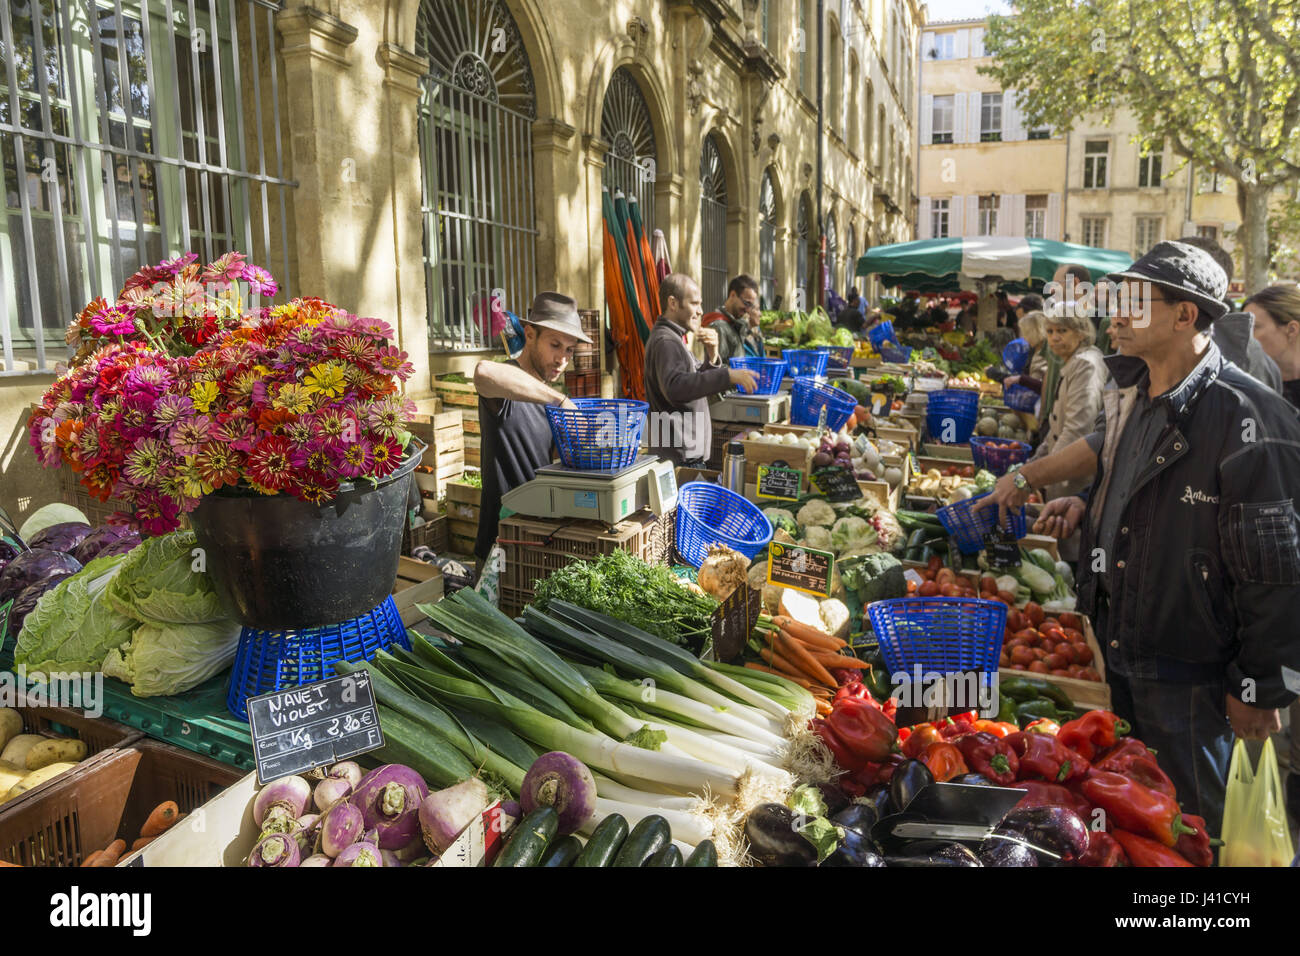 Vegetable stall at Market Place Richelme, Aix en Provence, Bouche du Rhone, Cote d'Azur, France Stock Photo